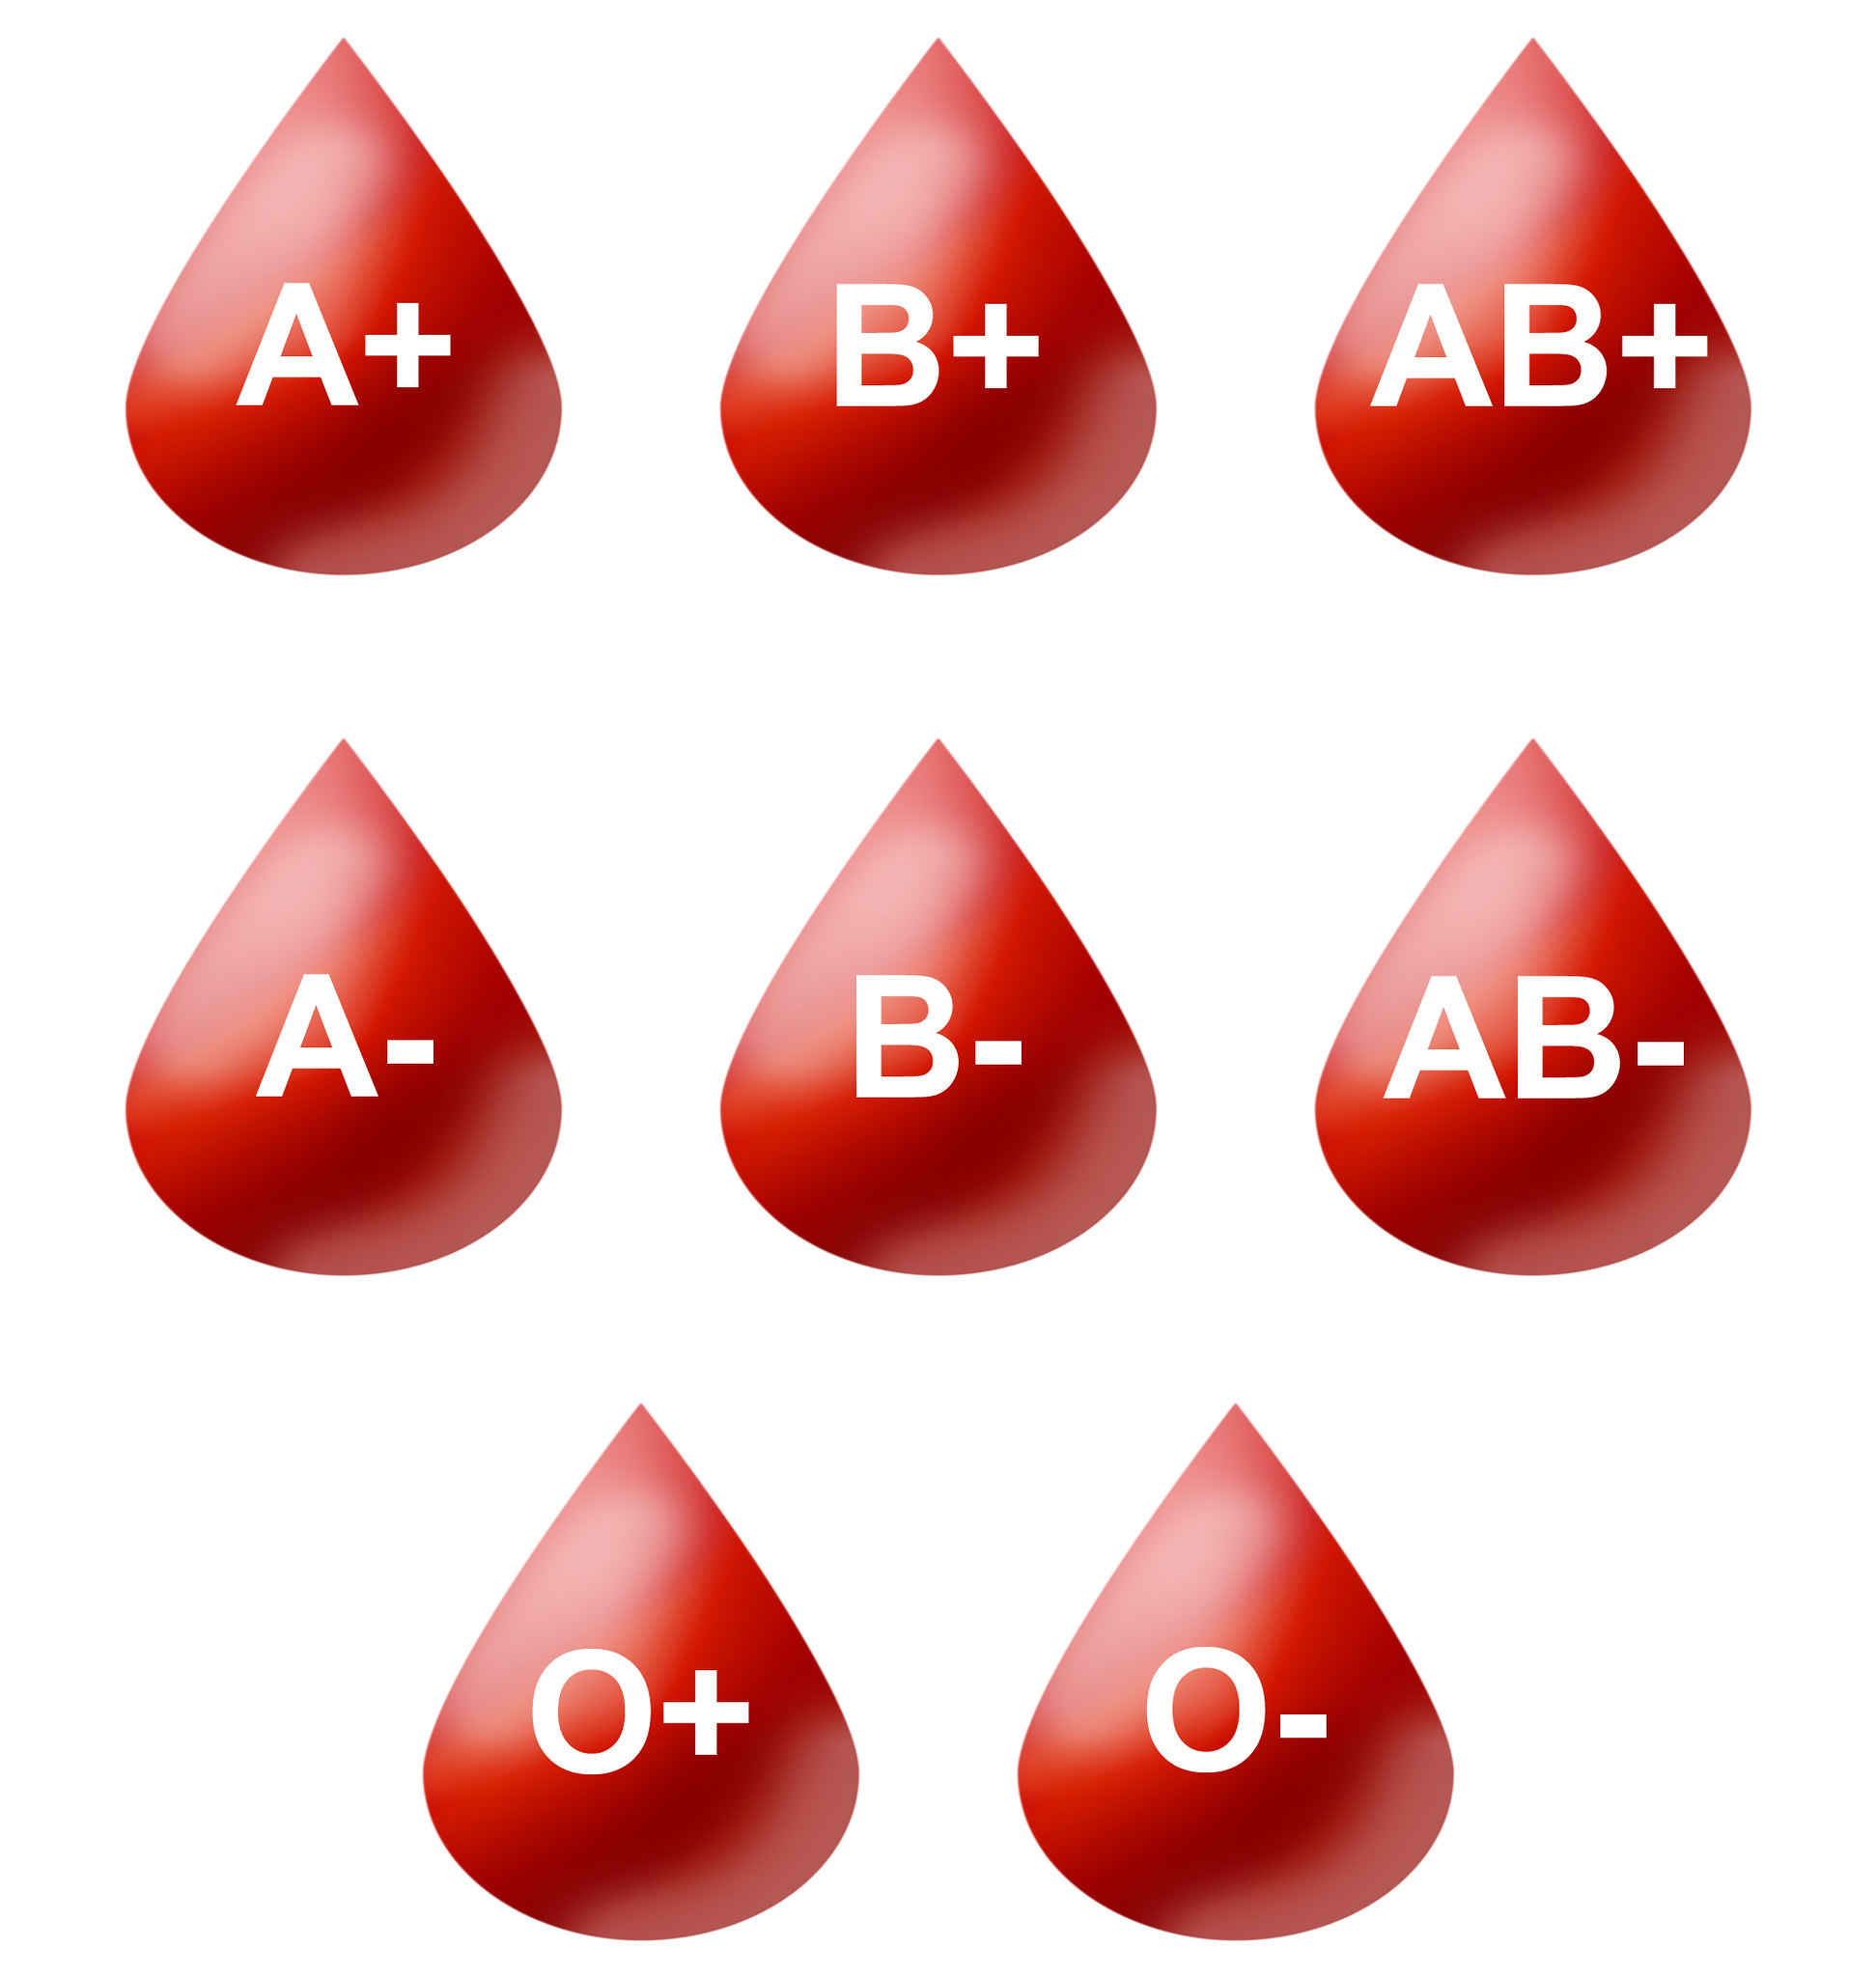 grupos sanguíneos